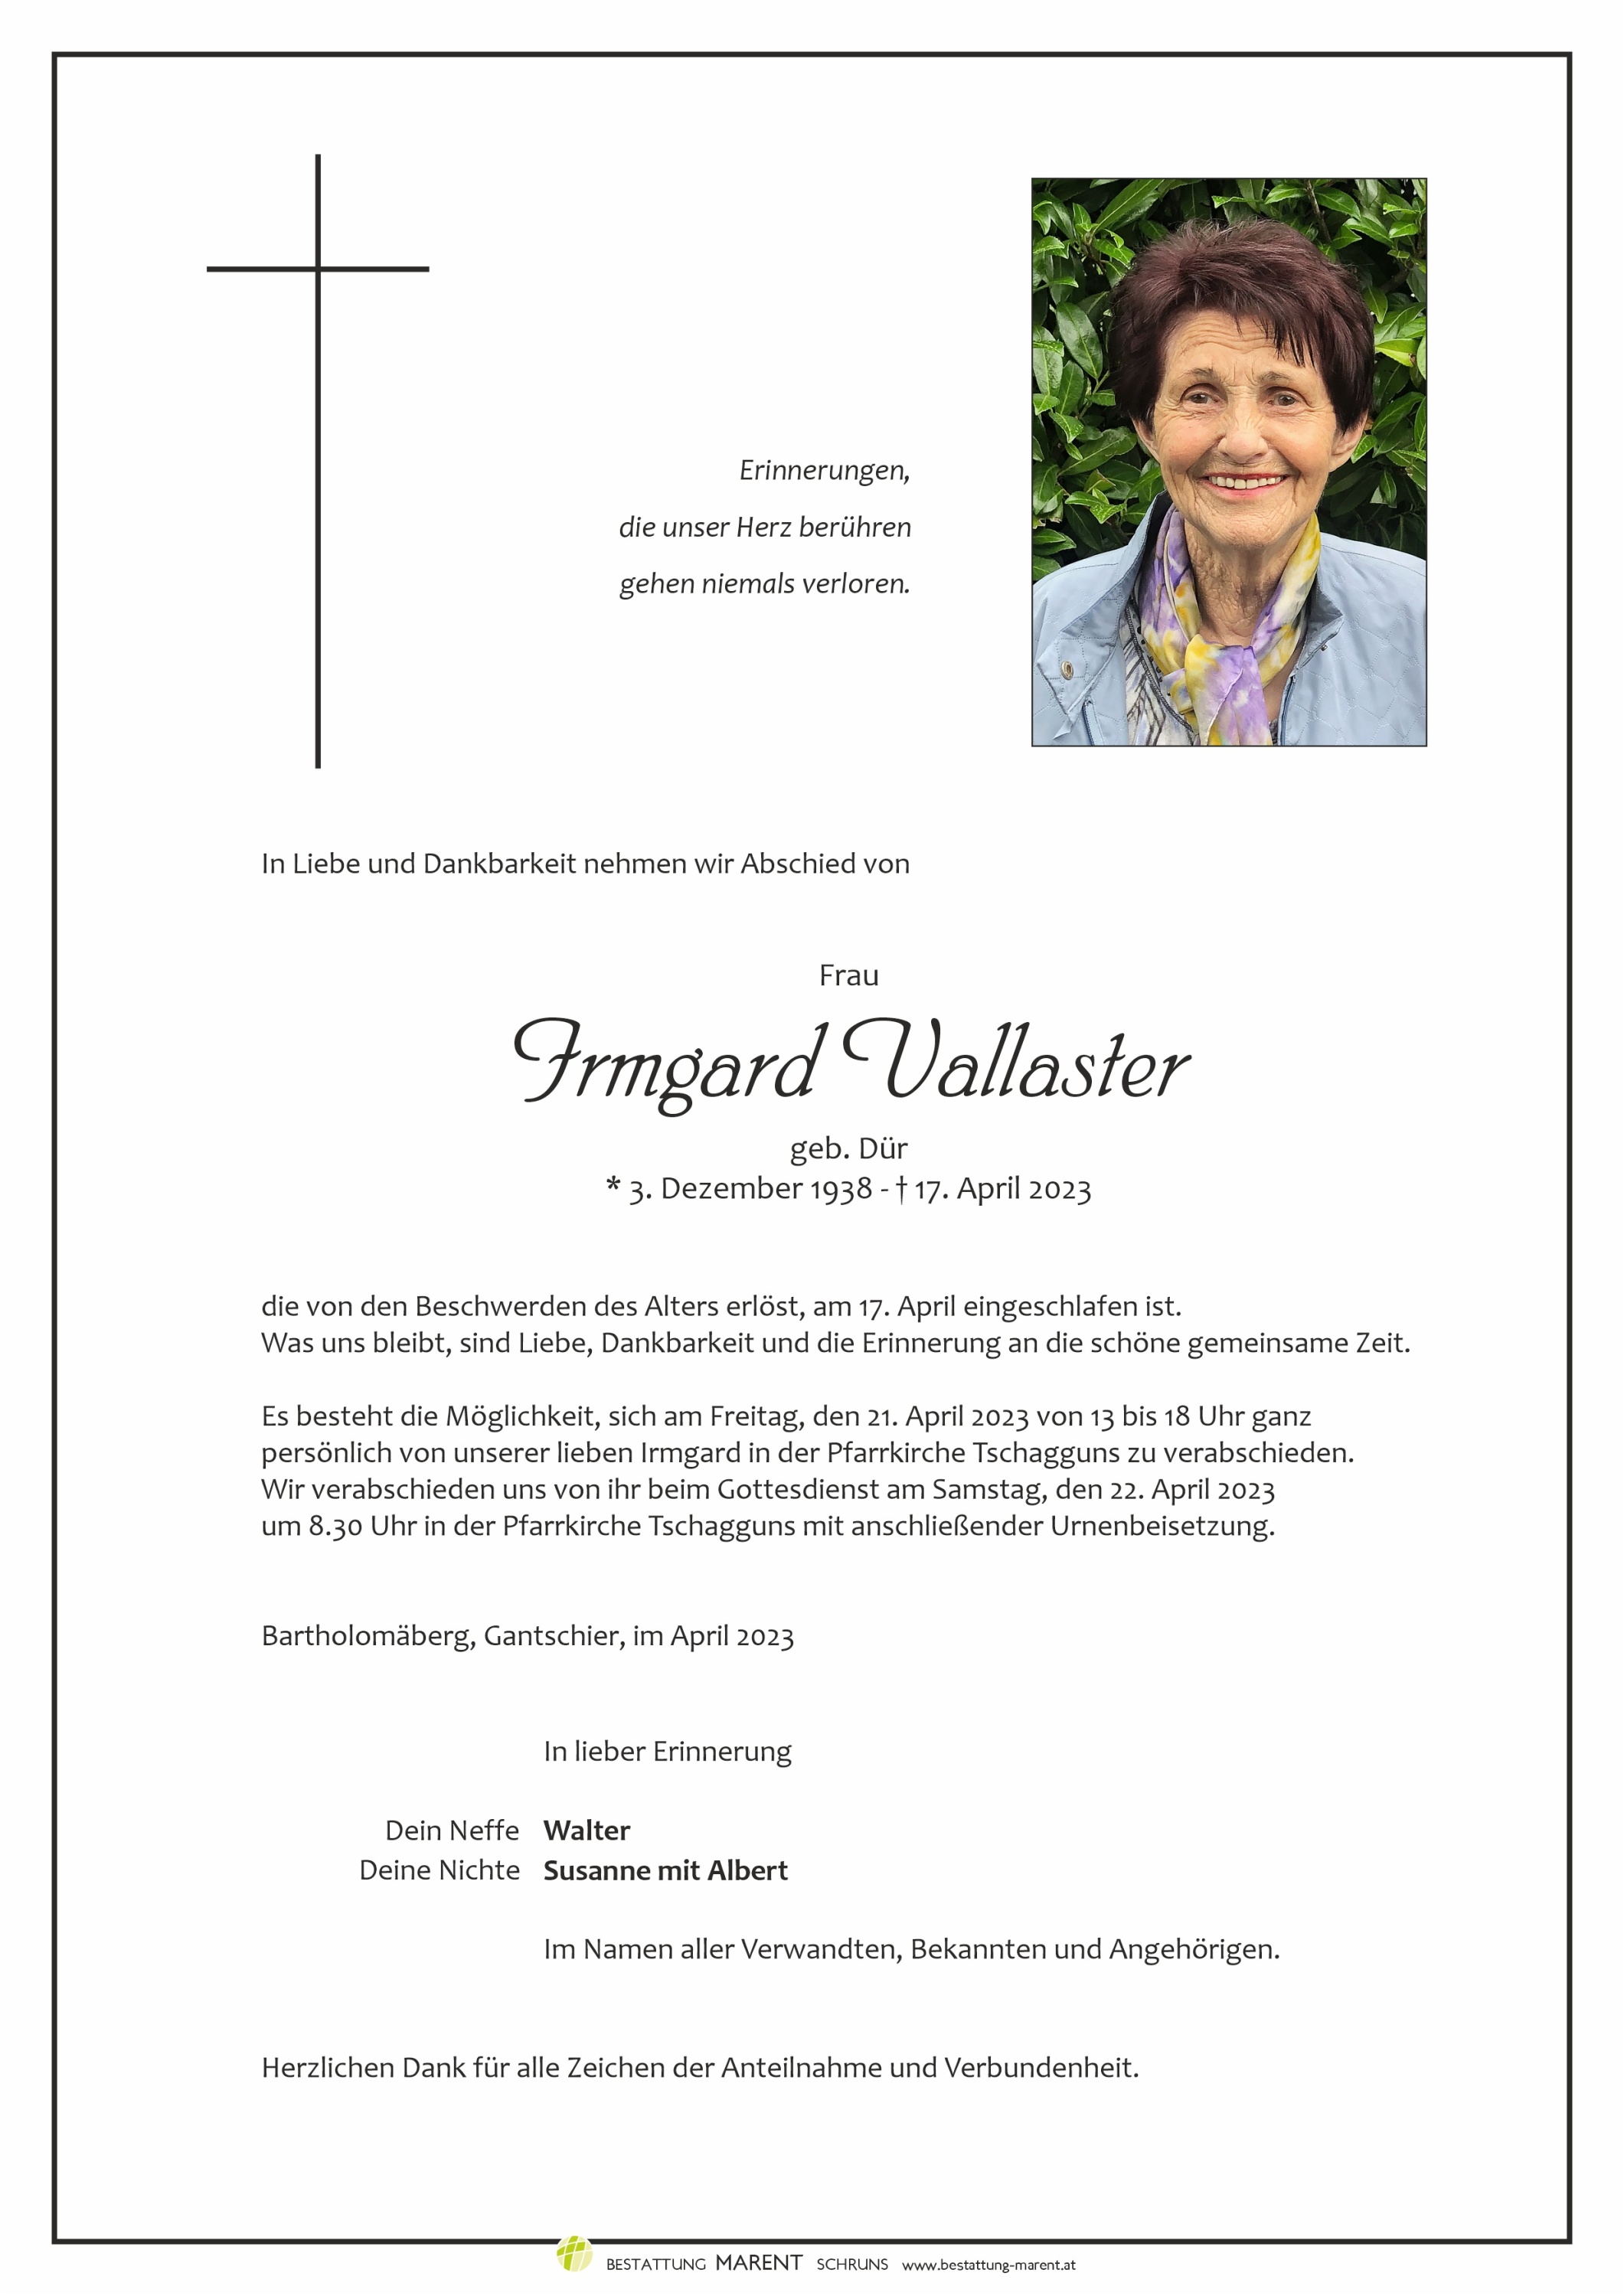 Irmgard Vallaster